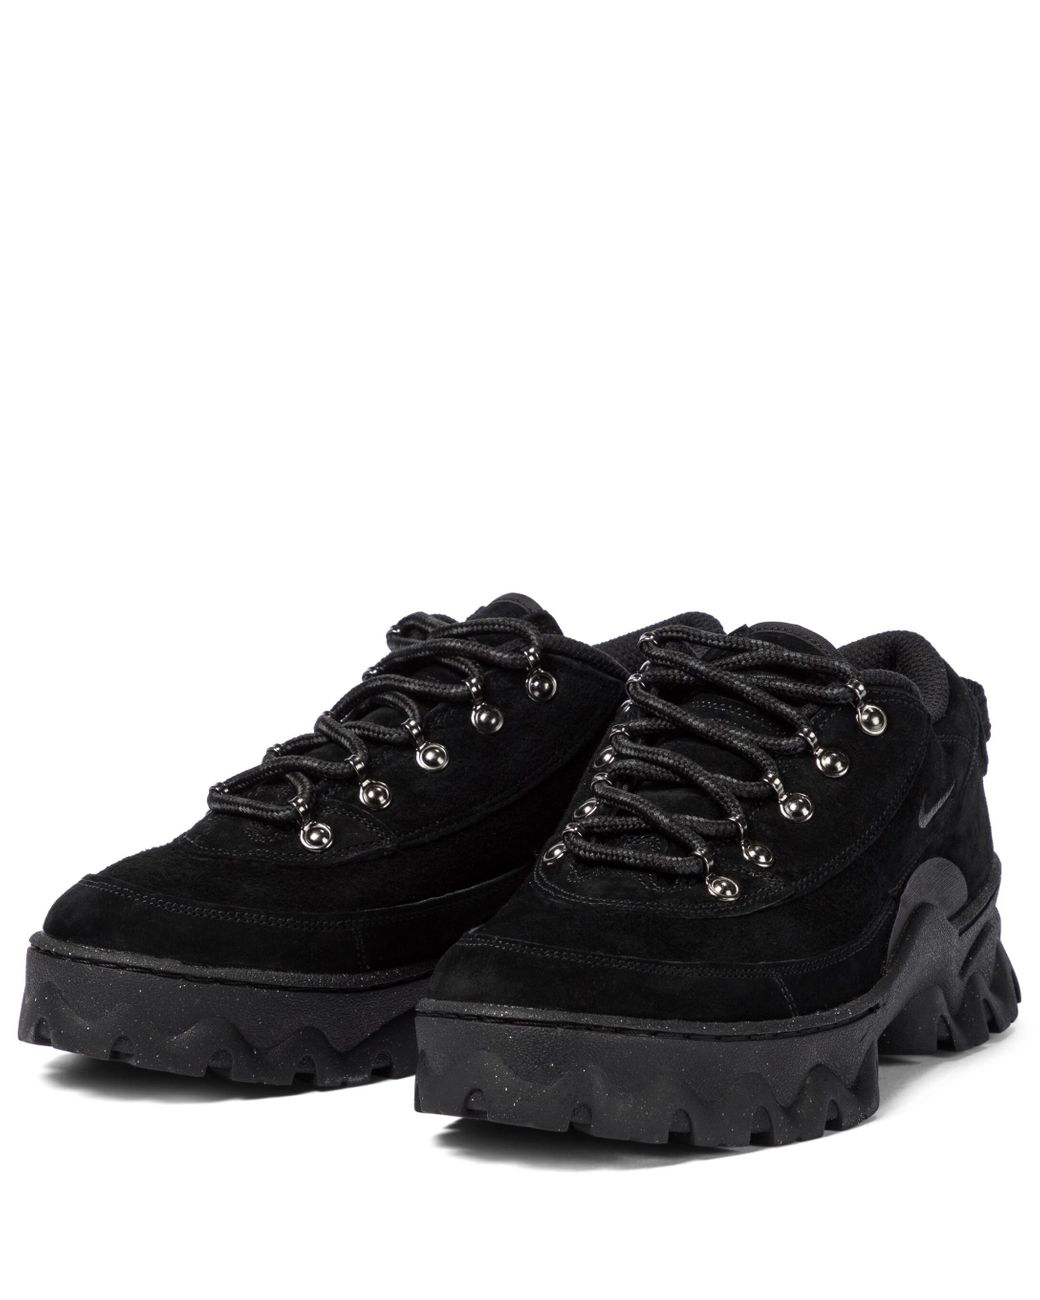 Nike Lahar Low Suede Sneakers in Black | Lyst UK